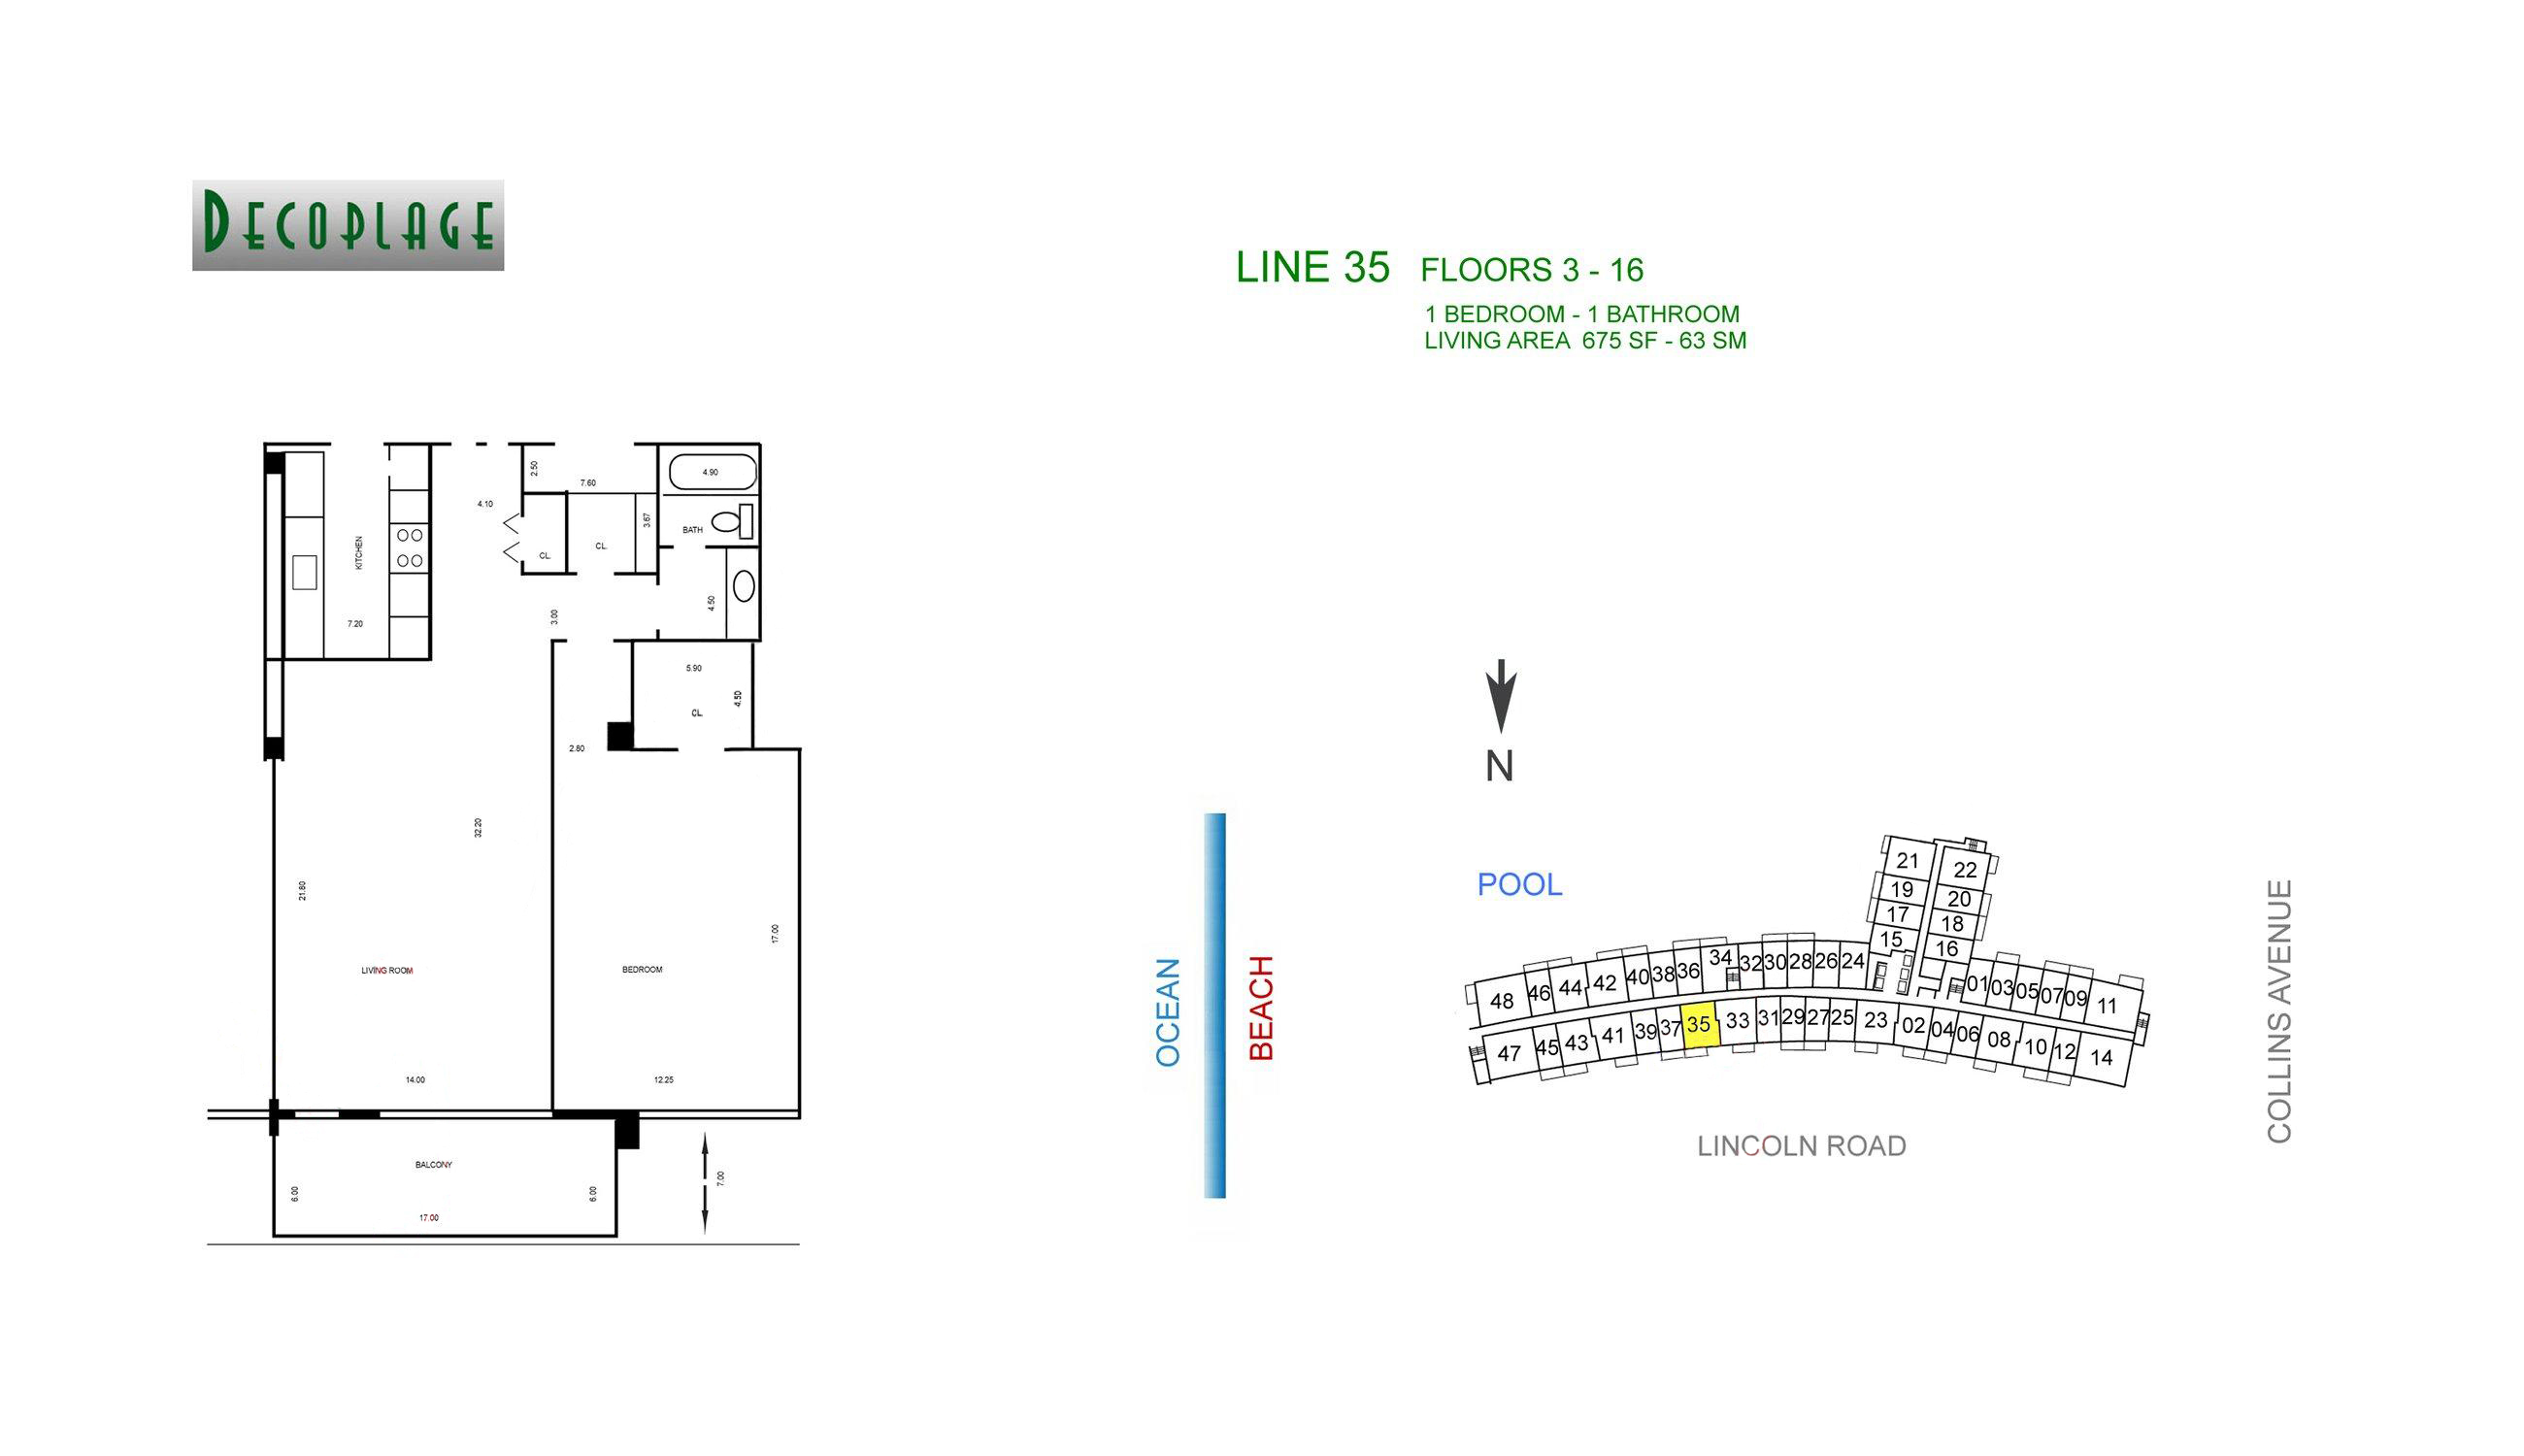 Decoplage Lines 35 Floors 3-16